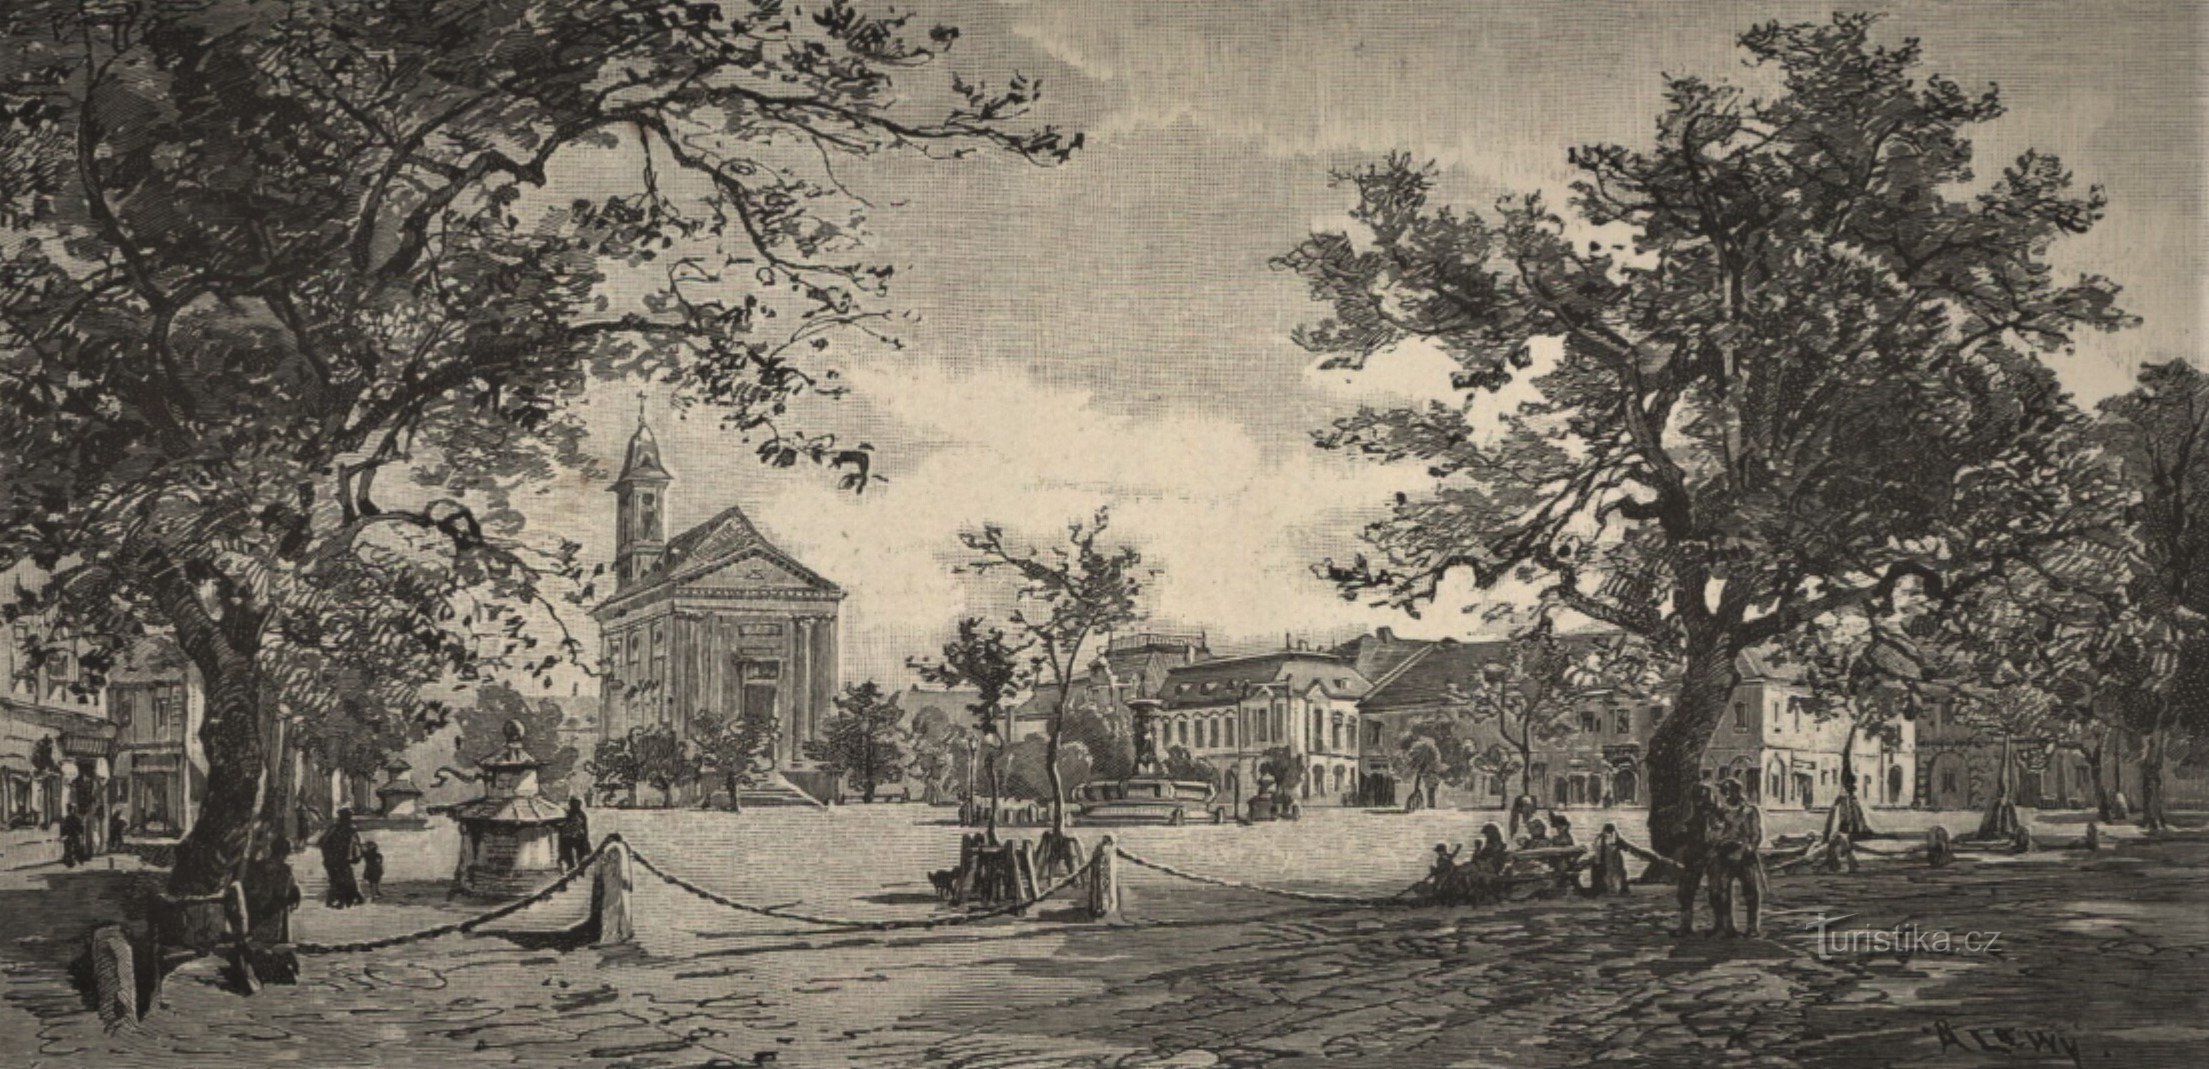 Trg u Josefovu krajem 19. stoljeća